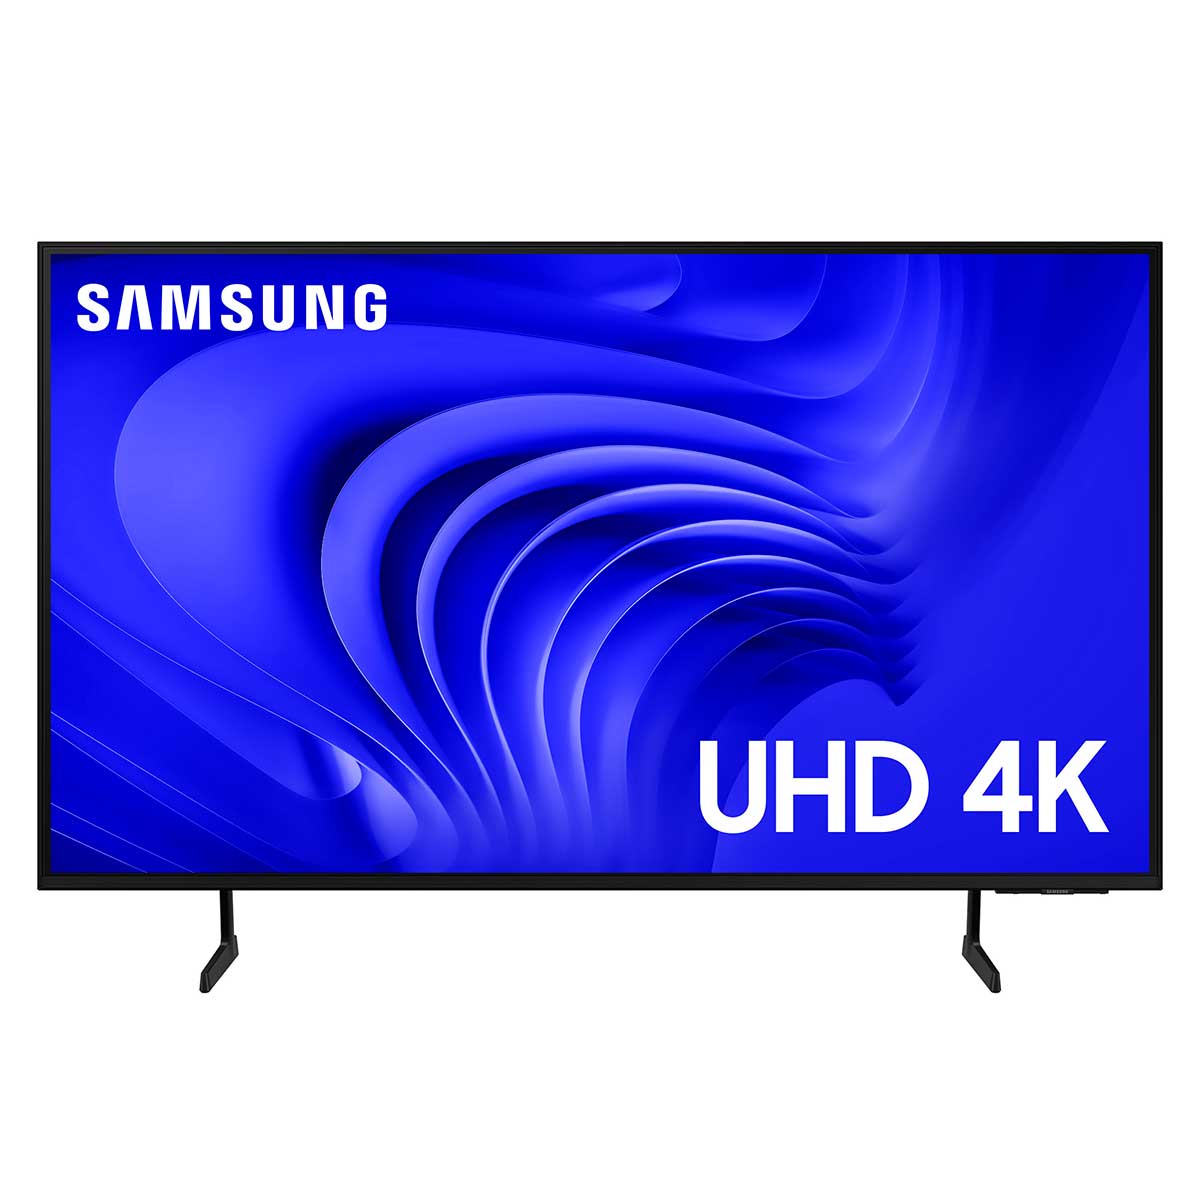 Smart TV 43" UHD Samsung 4K Processador Crystal 4K Gaming Hub Alexa built in - 43DU7700